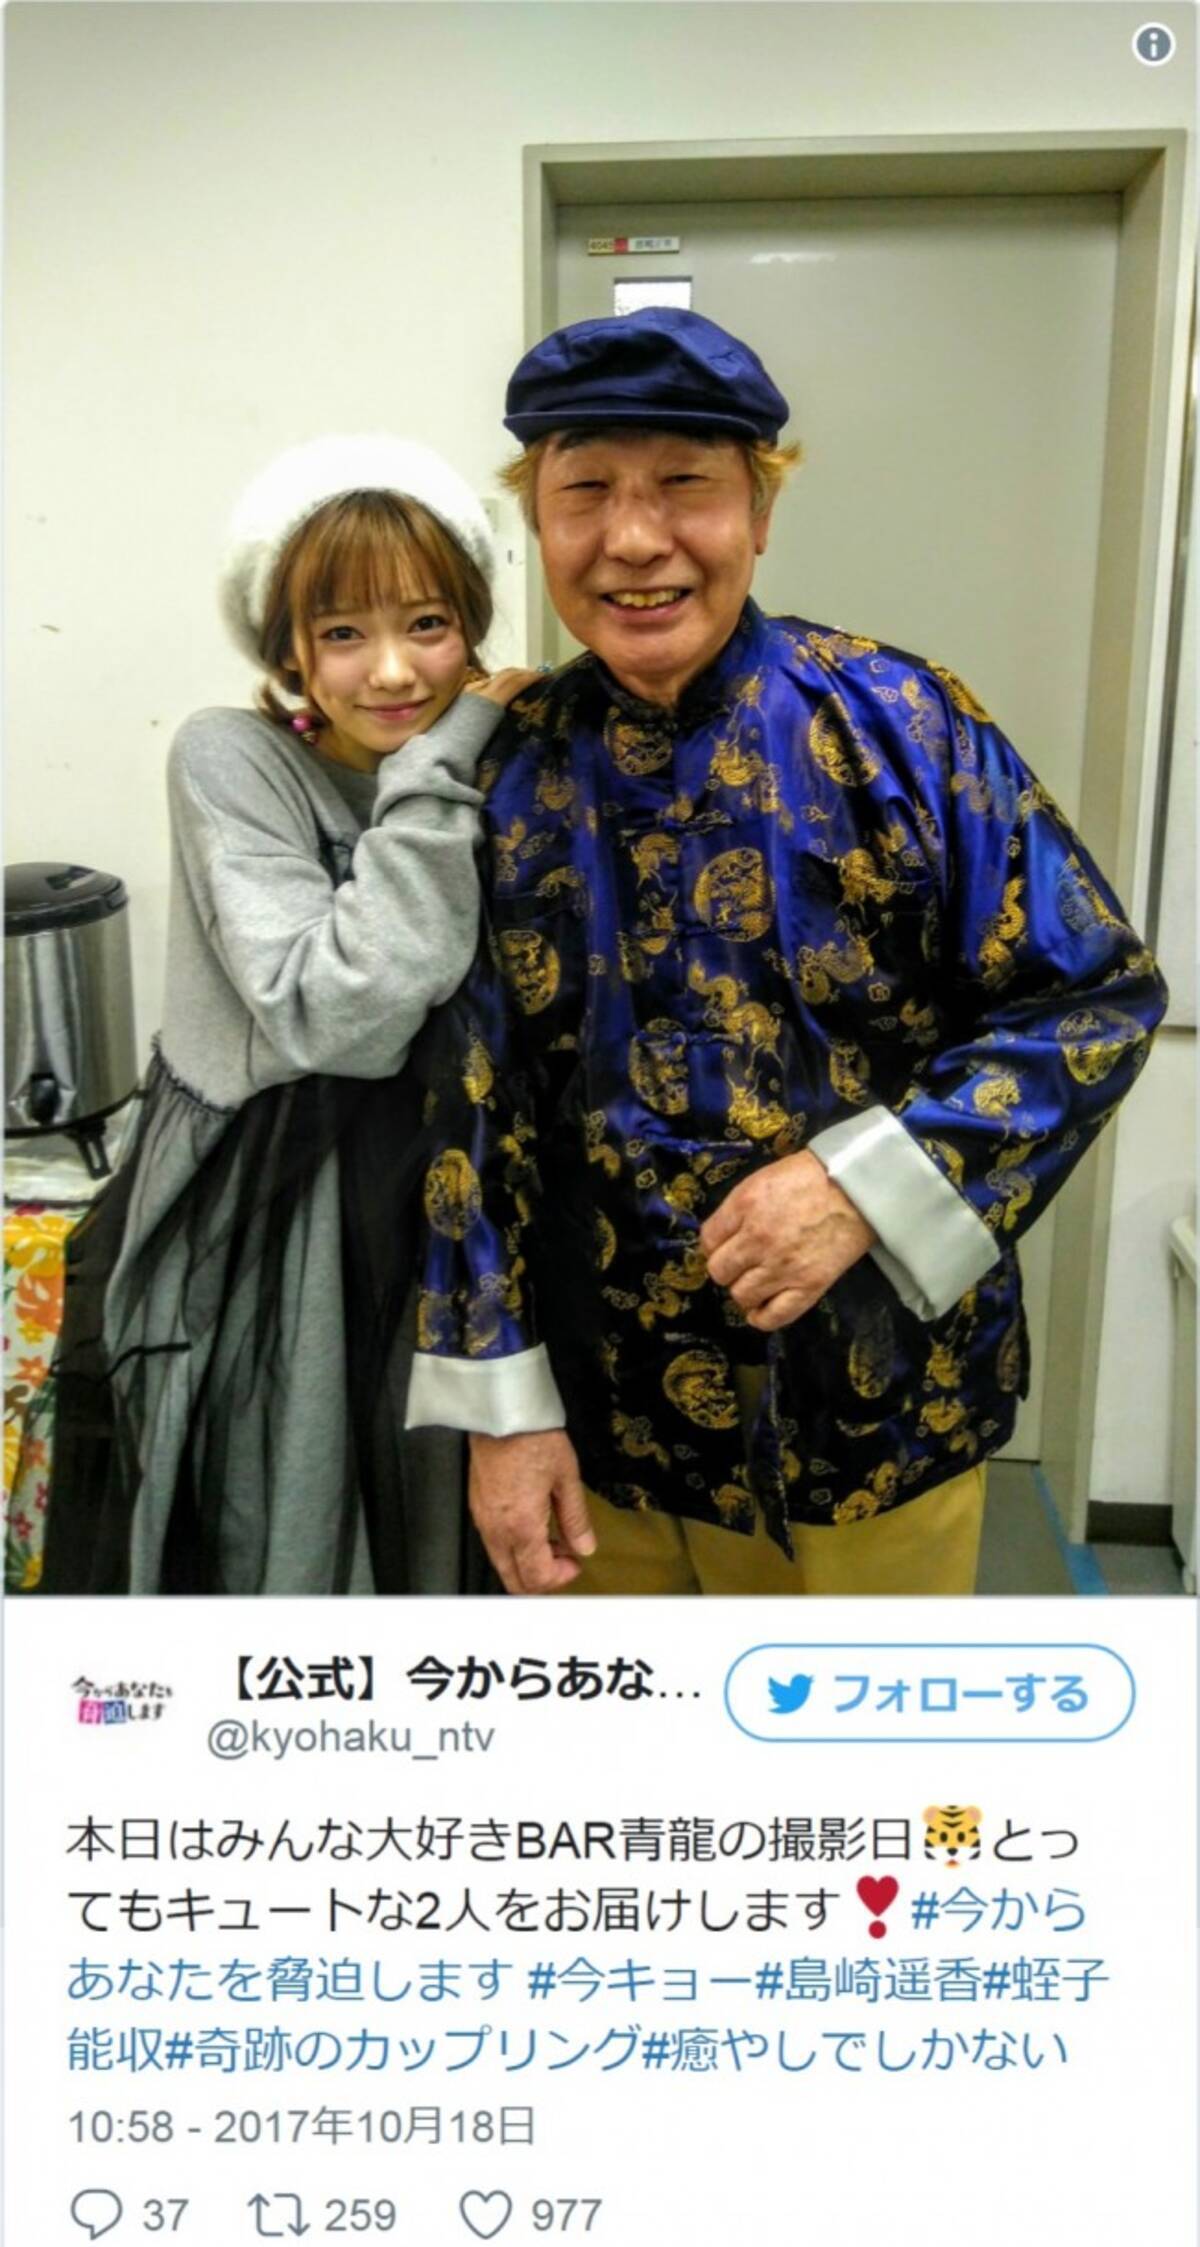 島崎遥香 蛭子能収 奇跡のカップリング写真に とってもキュート と反響 17年10月19日 エキサイトニュース